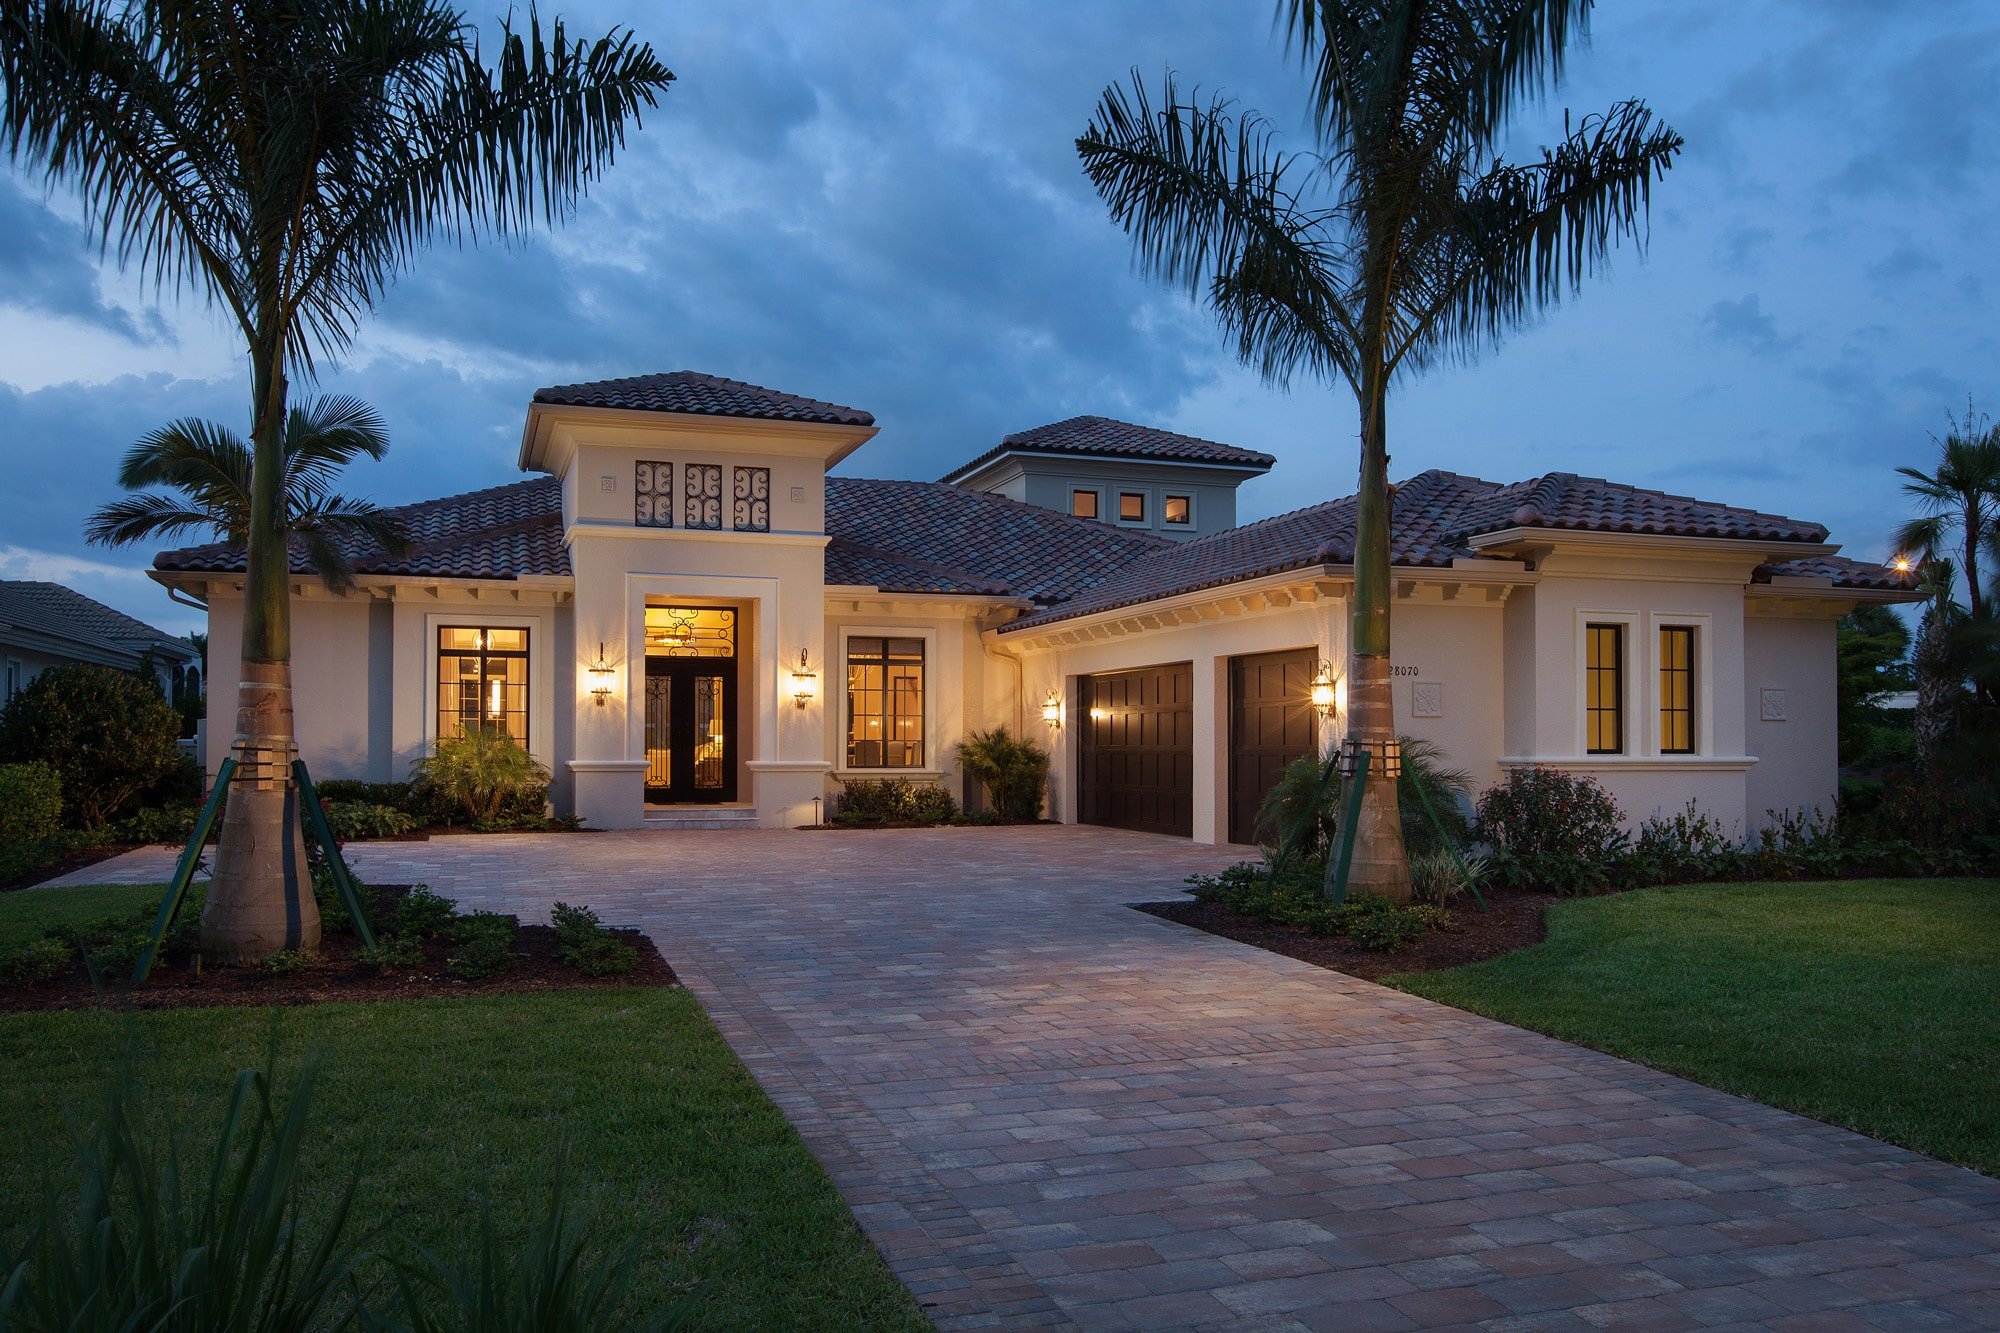 Купить дом во флориде сша недорого купить недвижимость в хургаде